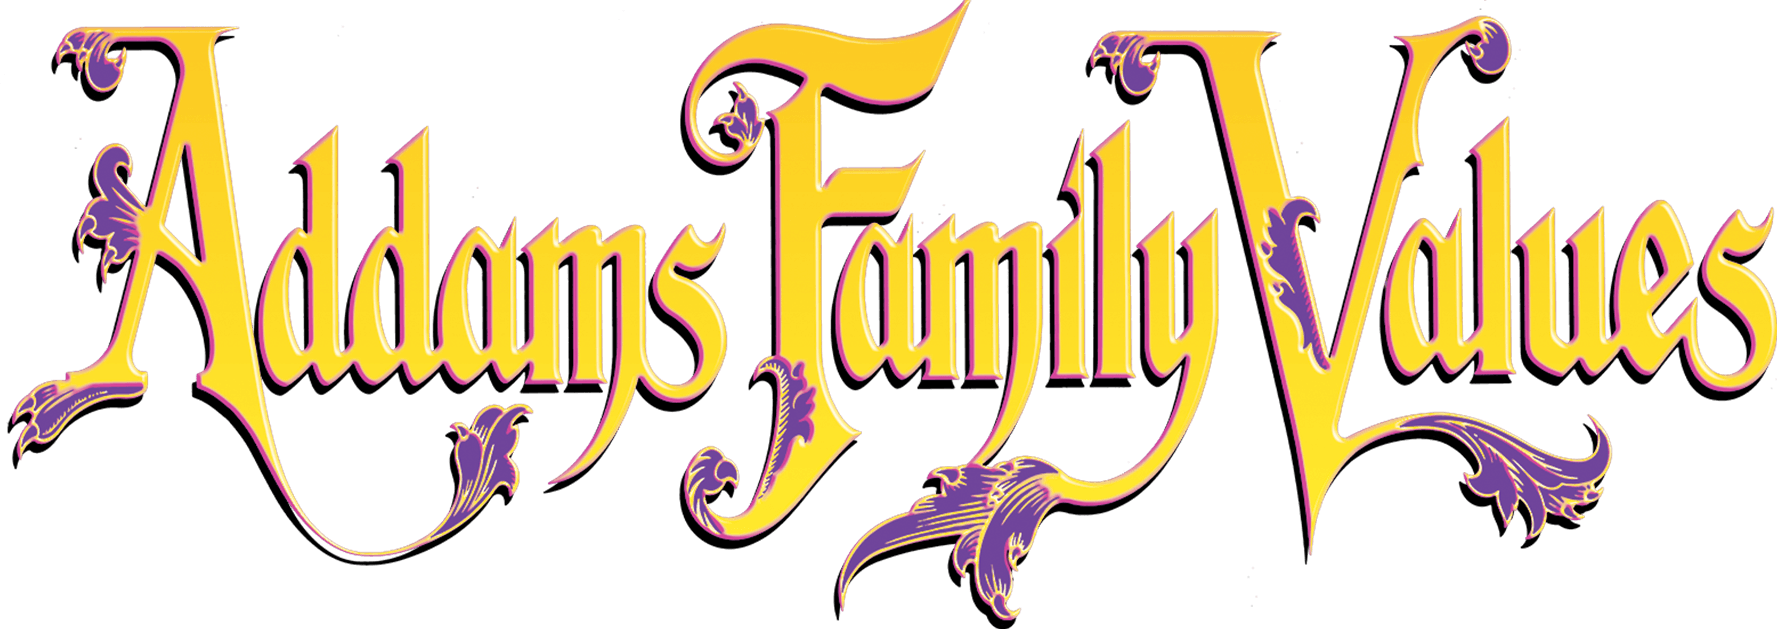 Addams Family Values logo